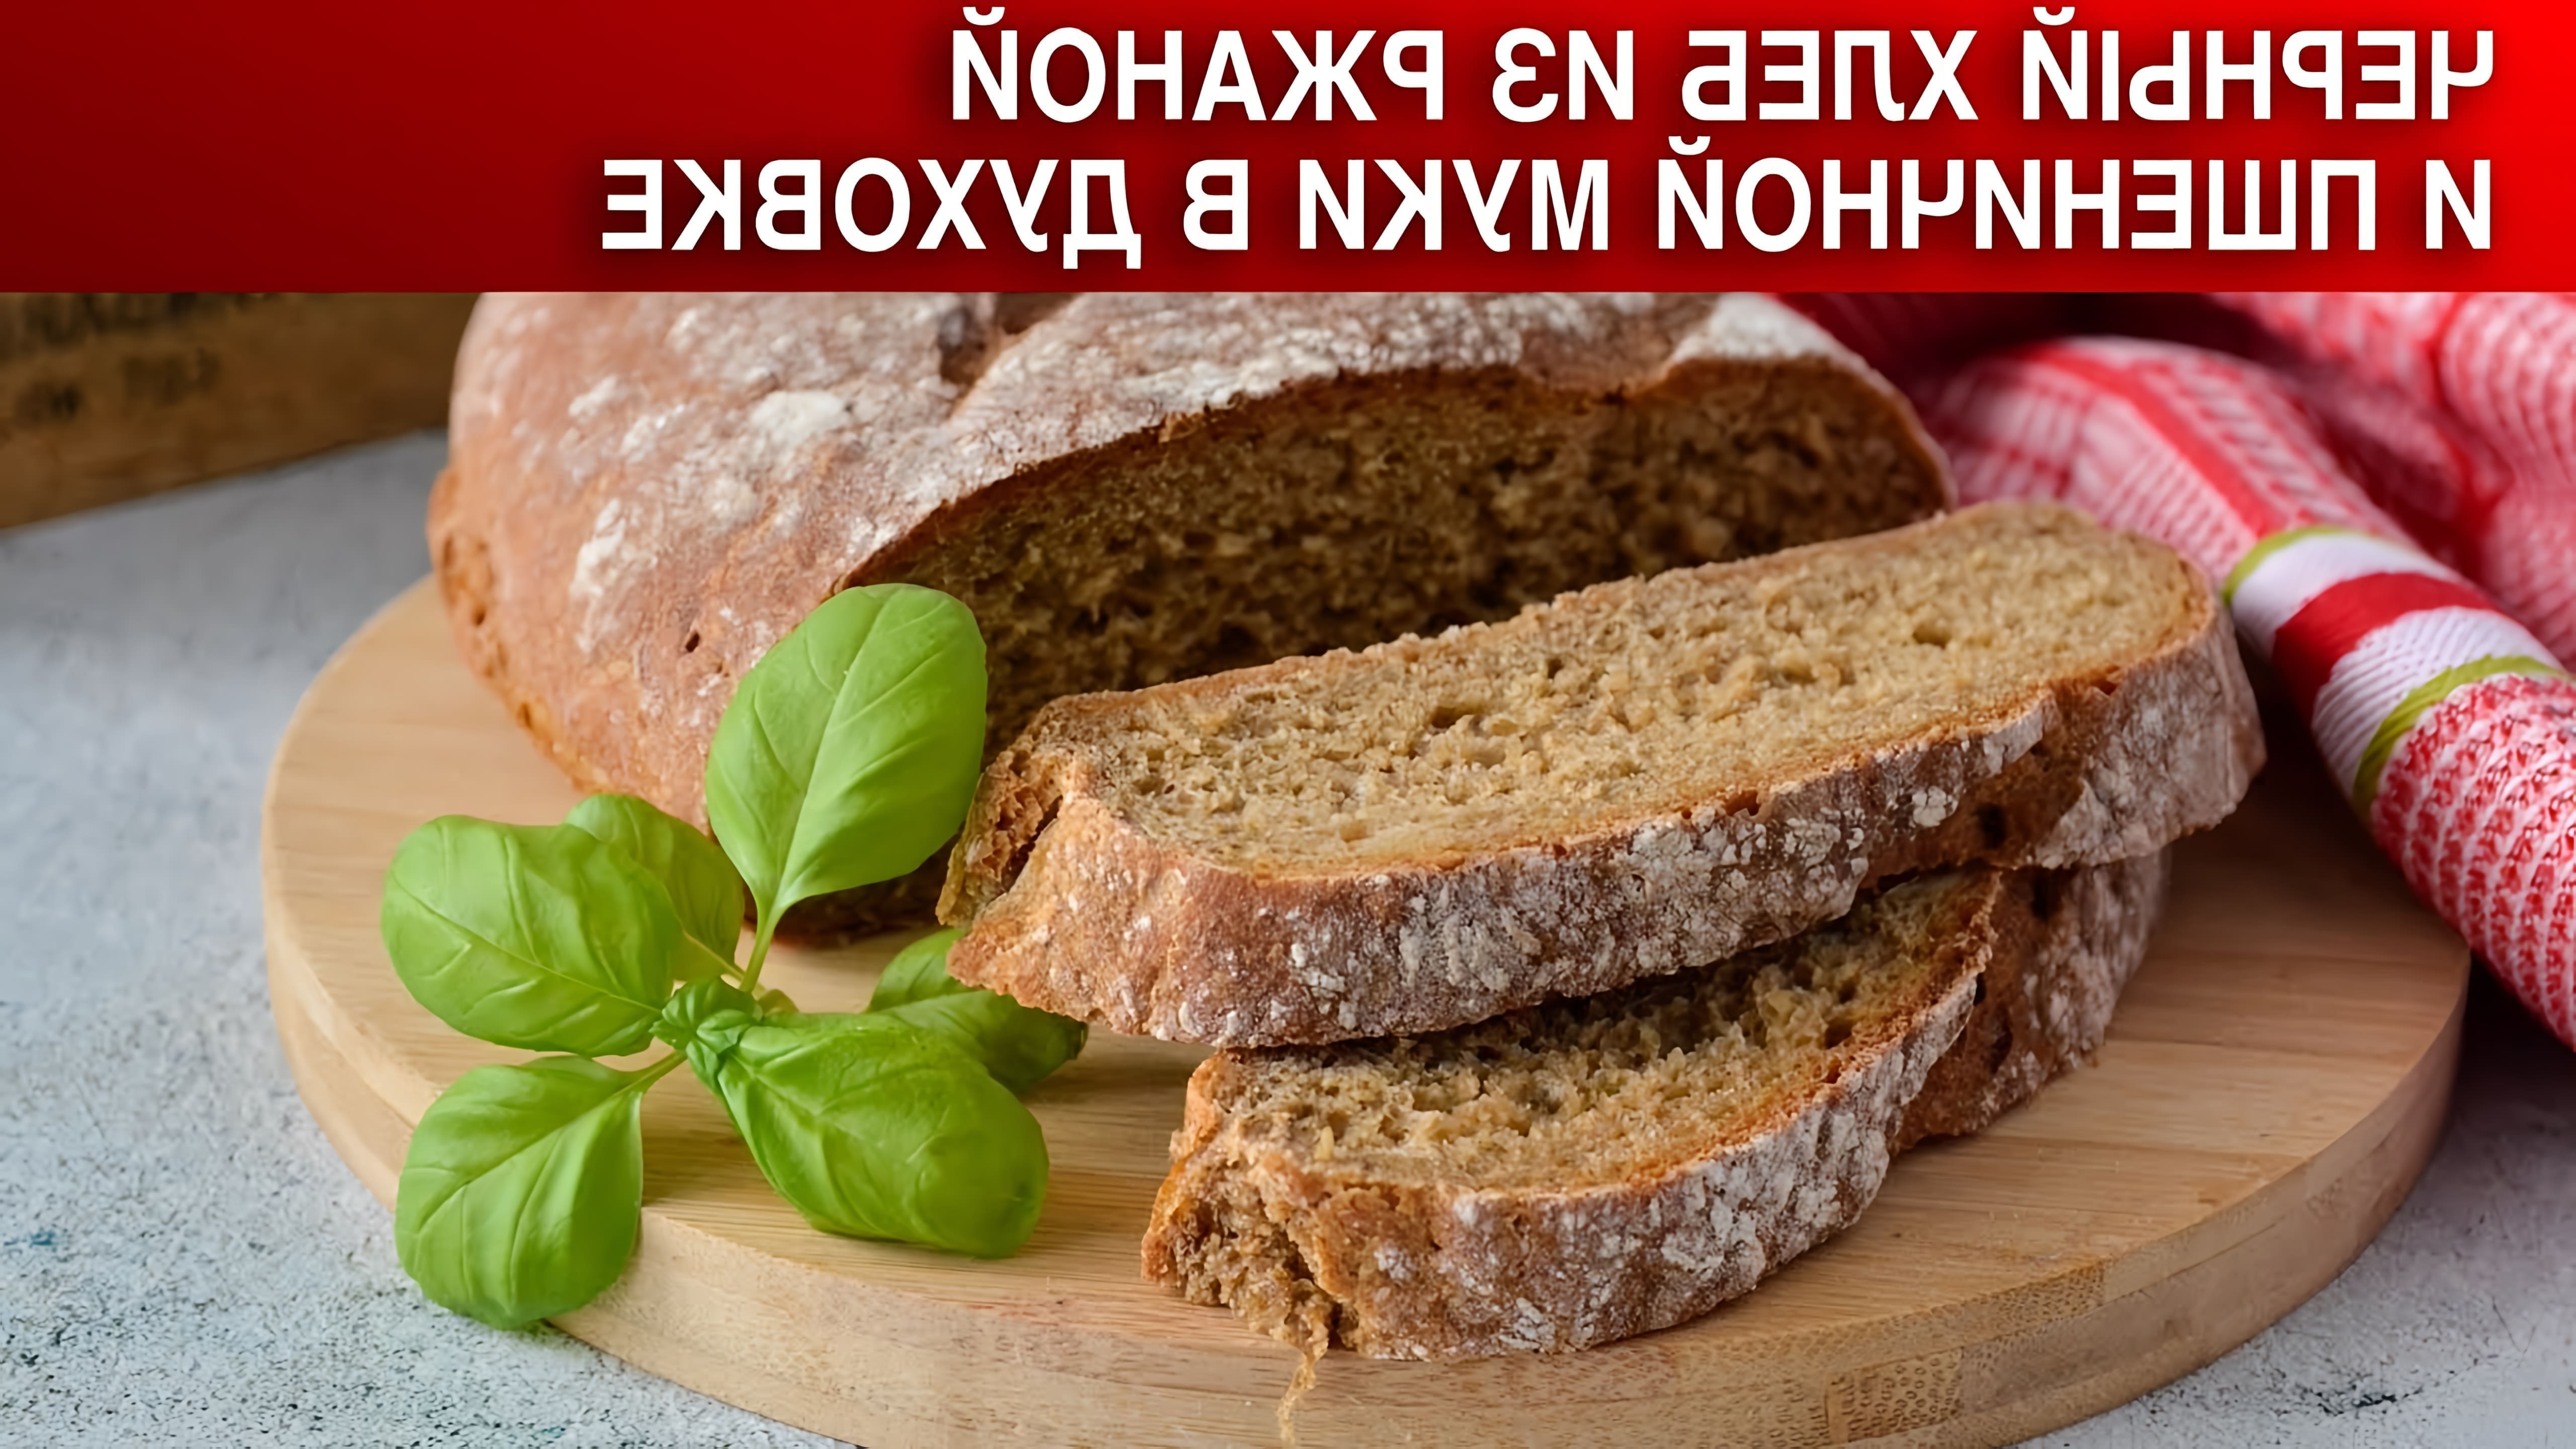 ДомашнийХлеб #РжанойХлеб #1000menu Настоящий ржаной хлеб, почти как из магазина! Домашний, абсолютно... 